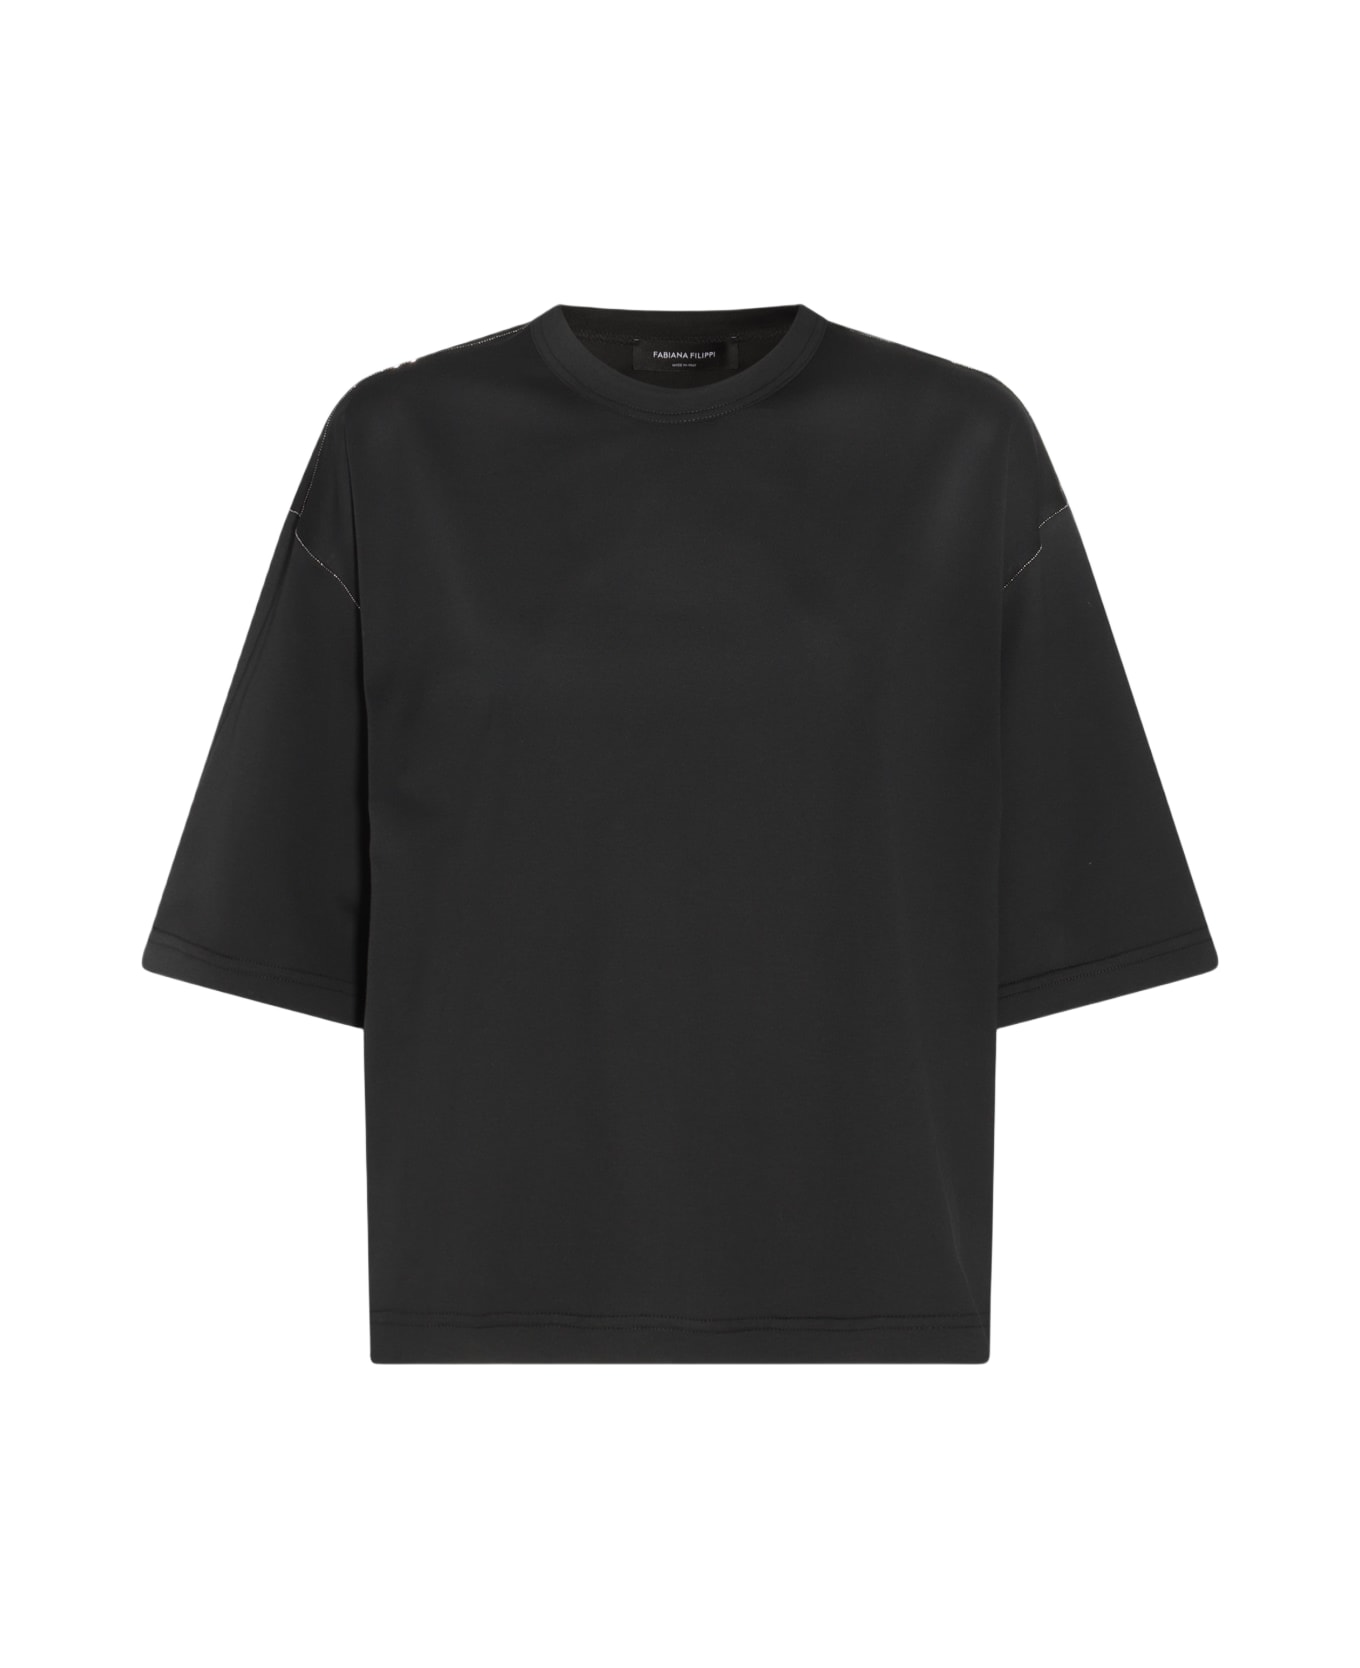 Fabiana Filippi Black Cotton T-shirt - Black Tシャツ